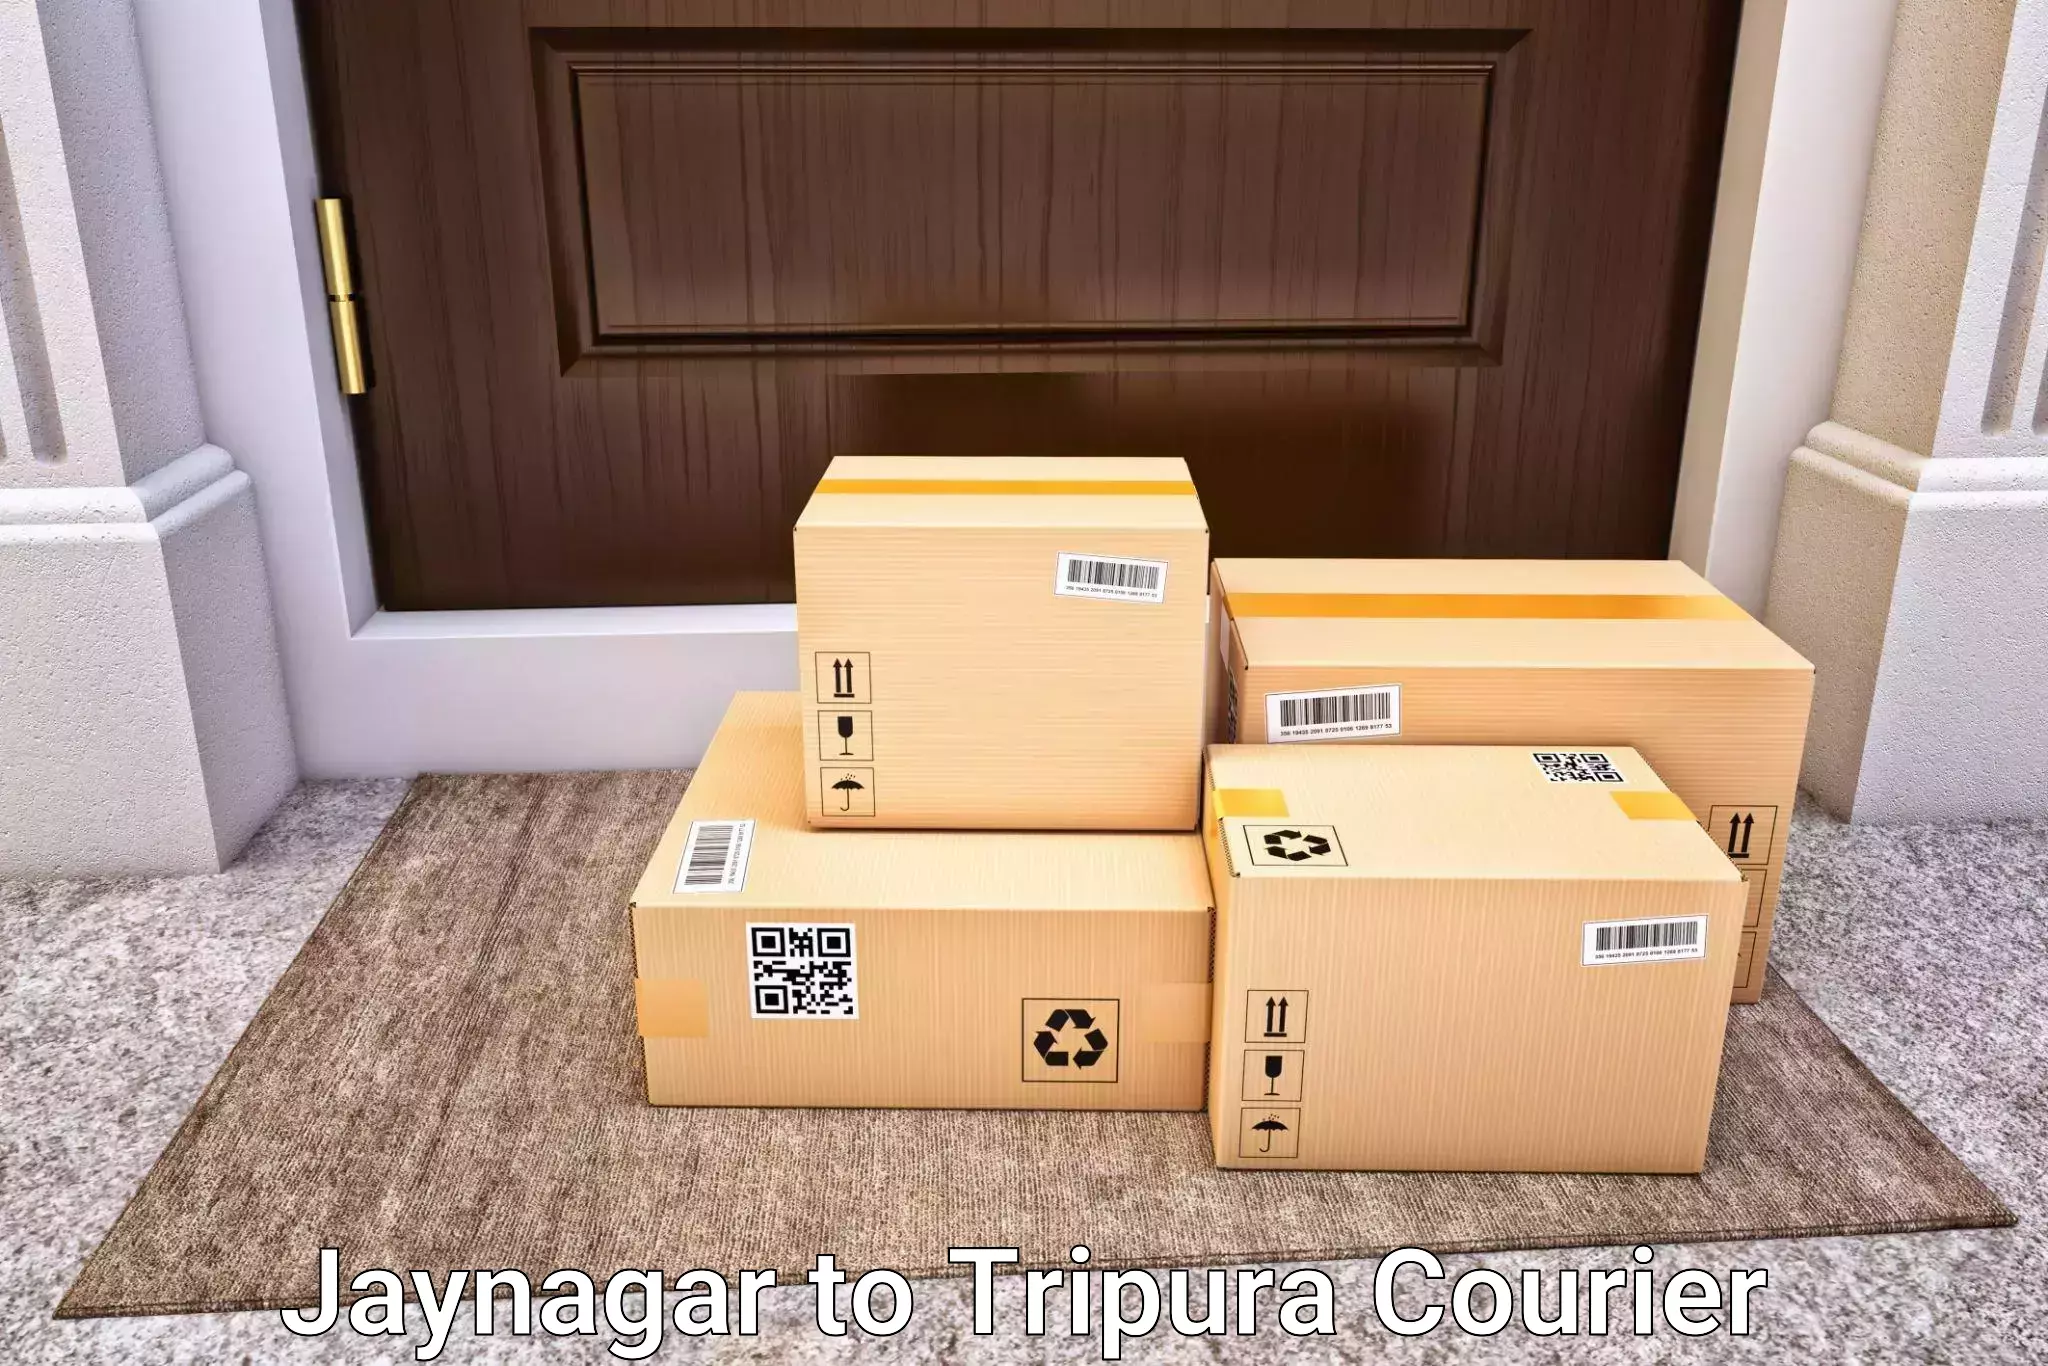 Baggage transport quote Jaynagar to Udaipur Tripura